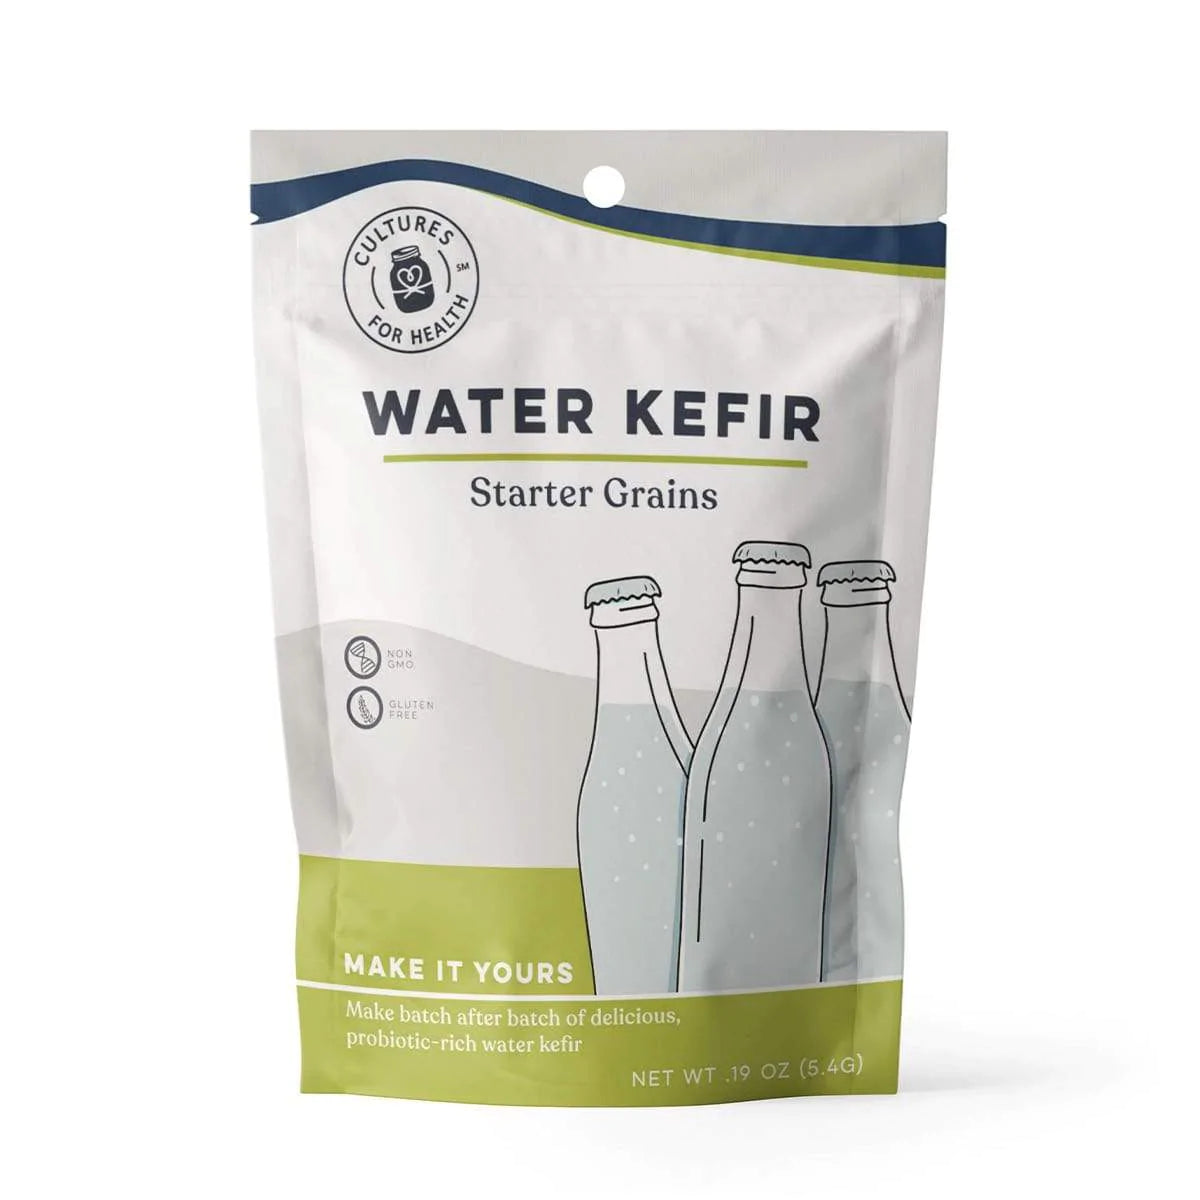 Water Kefir Grains